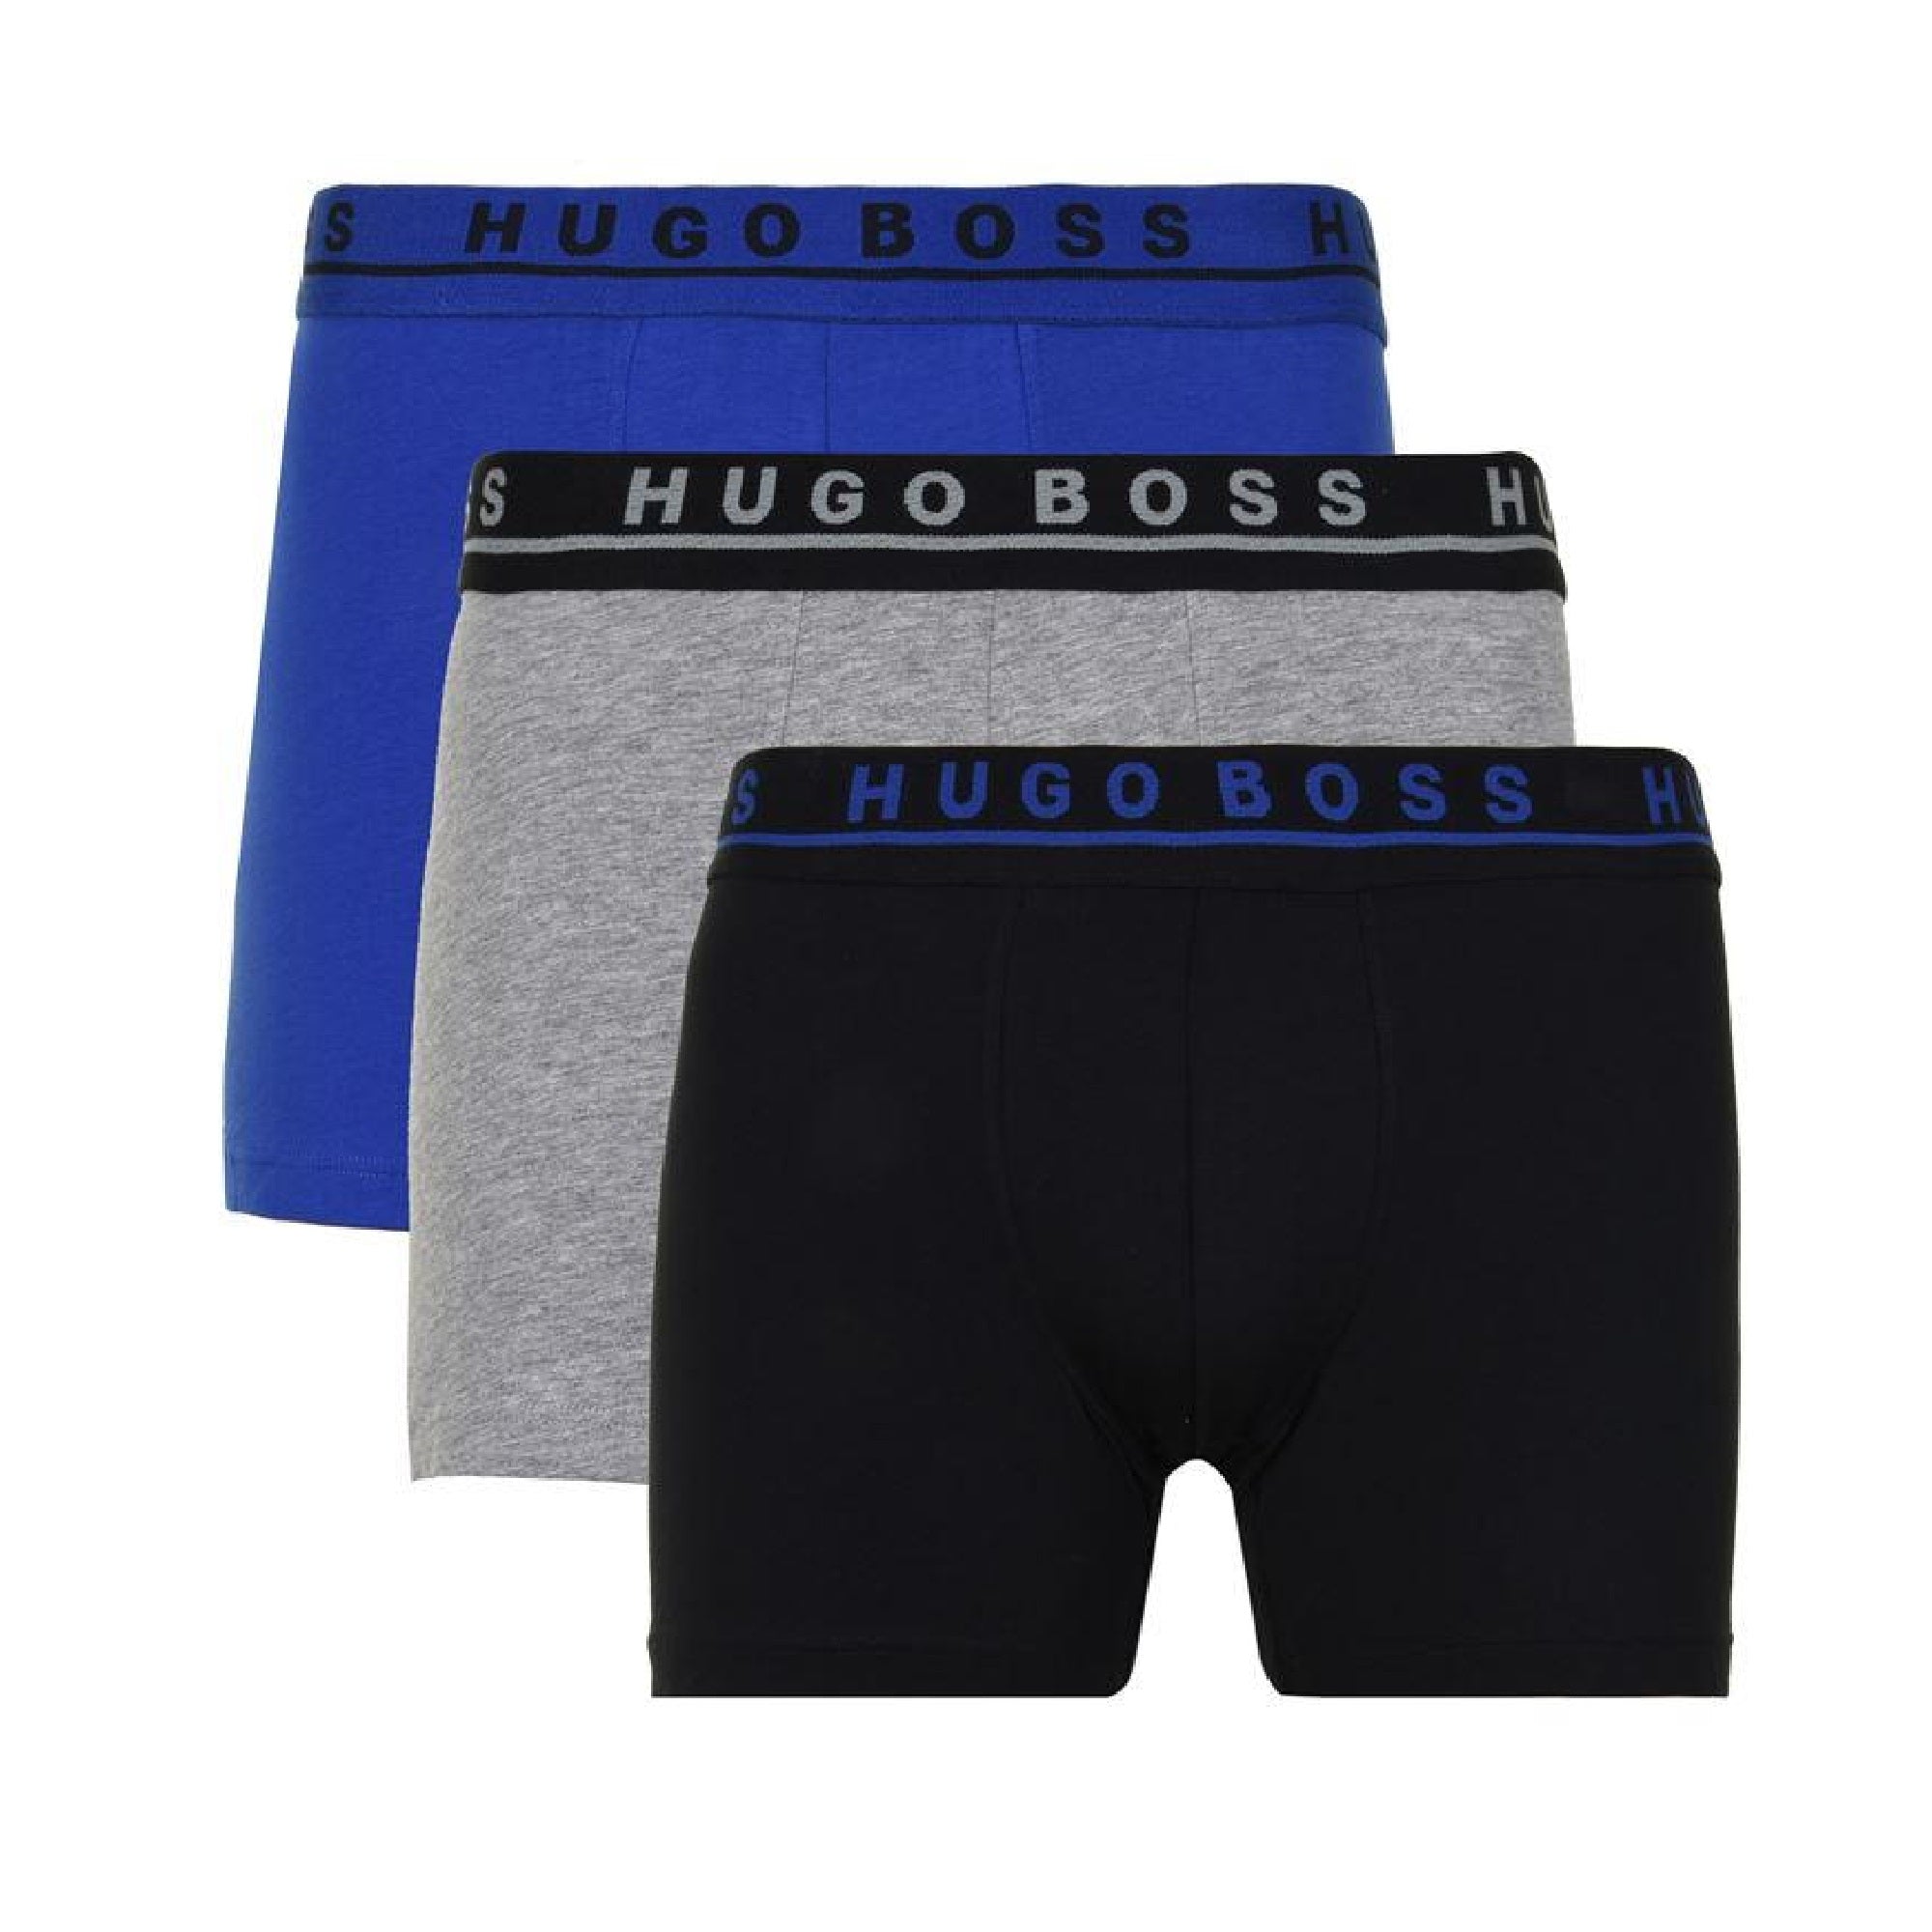 hugo boss boxer shorts 3 pack